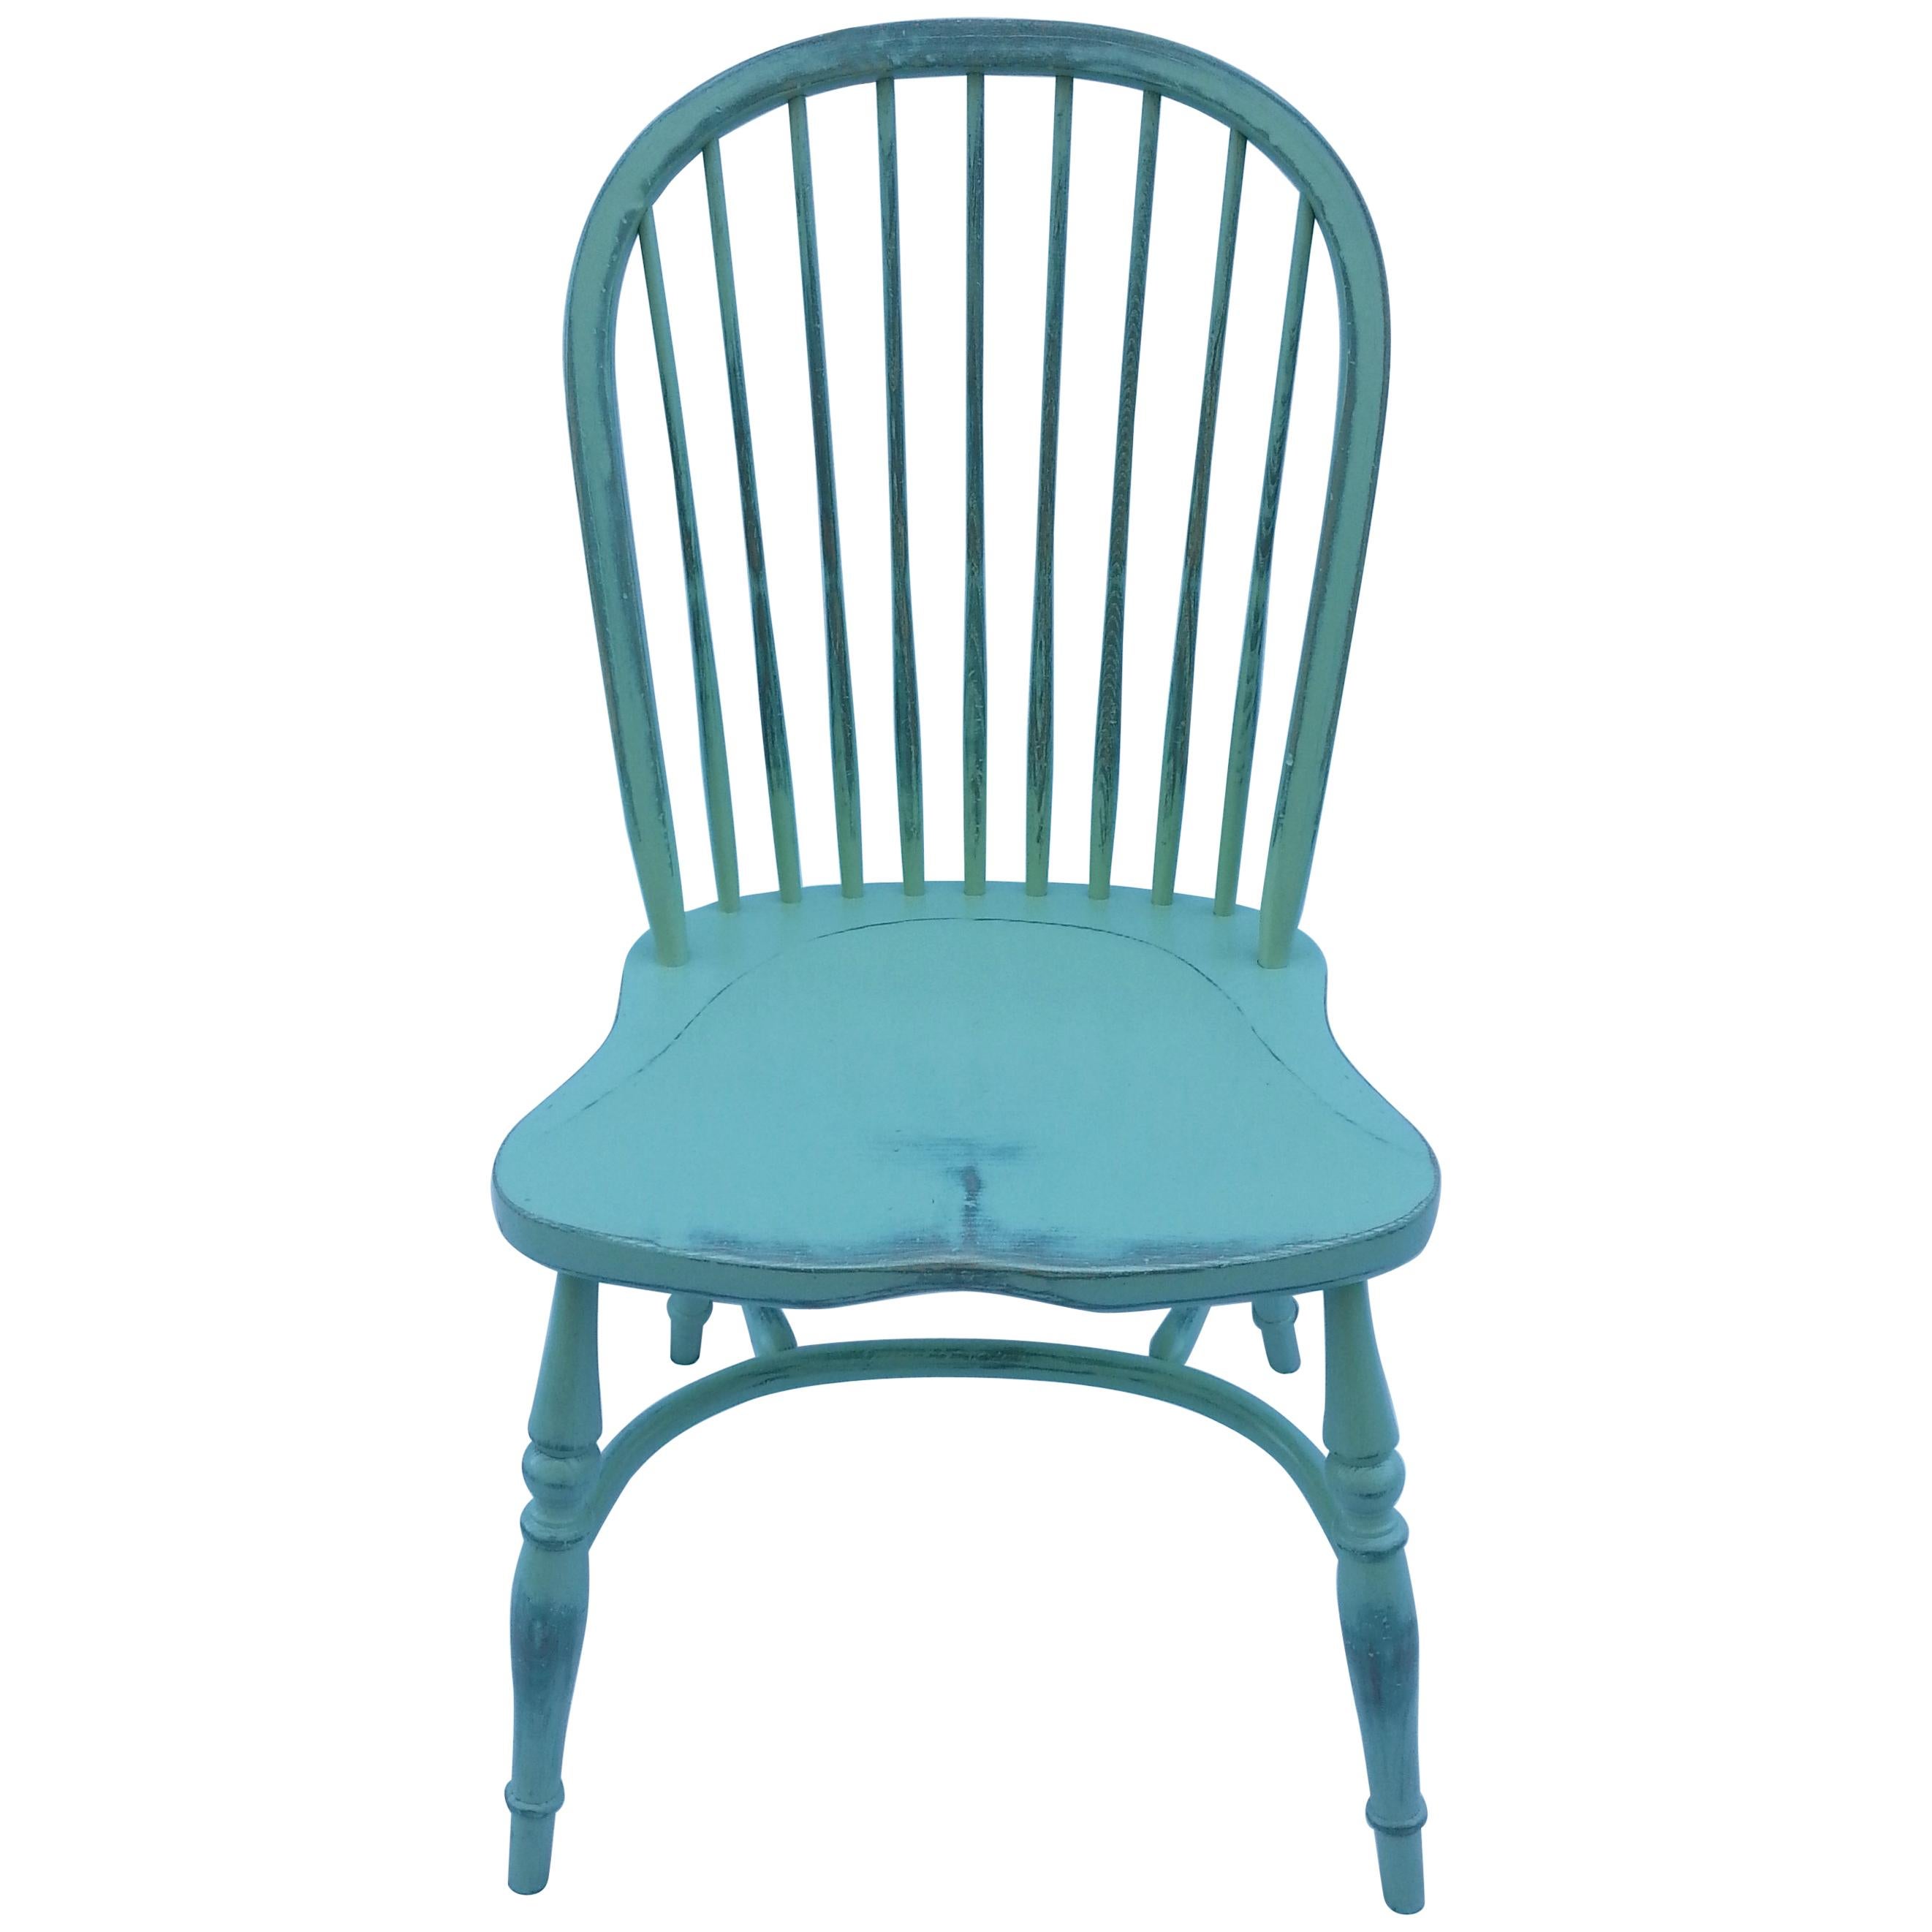 Reproduction de la chaise d'appoint vert clair à dossier fuseau et en dessous bleu